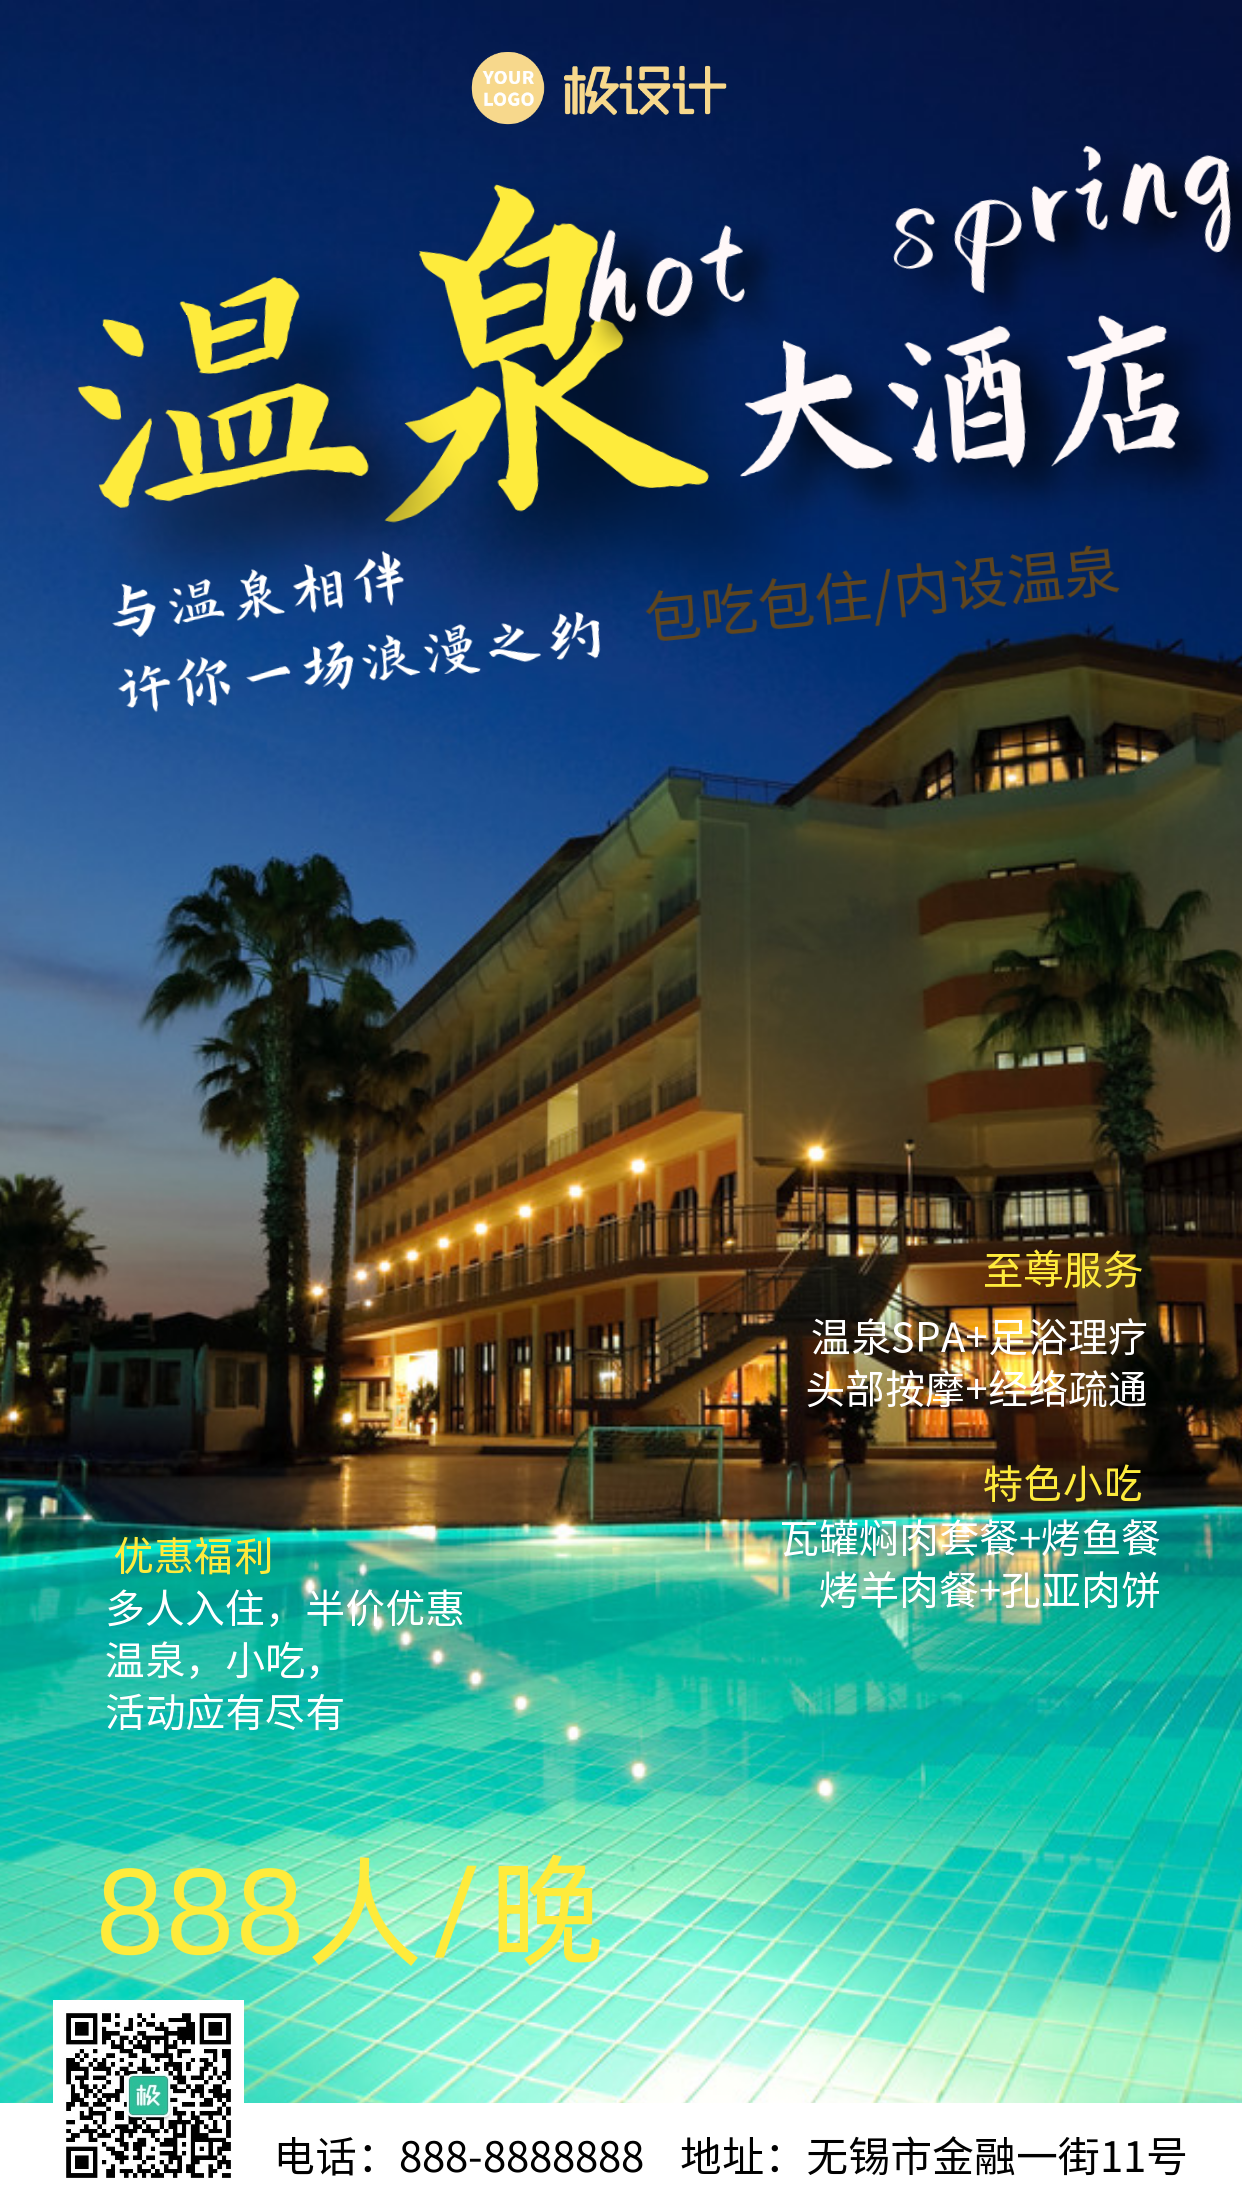 【摄影图海报】温泉酒店旅游宣传简约清新海报